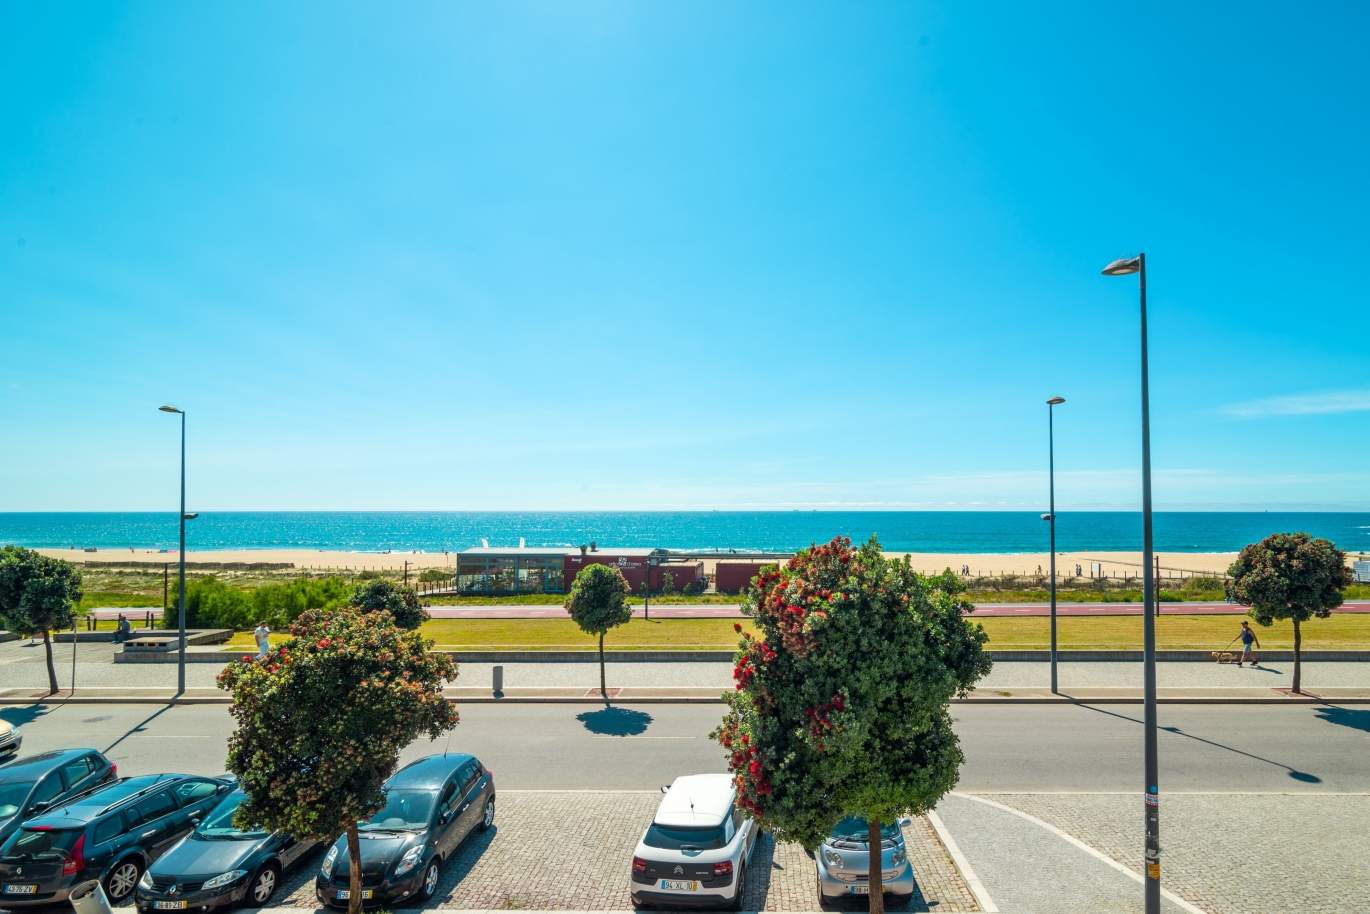 Apartamento, en venta, primera línea de mar, Canidelo, Gaia, Portugal_140770